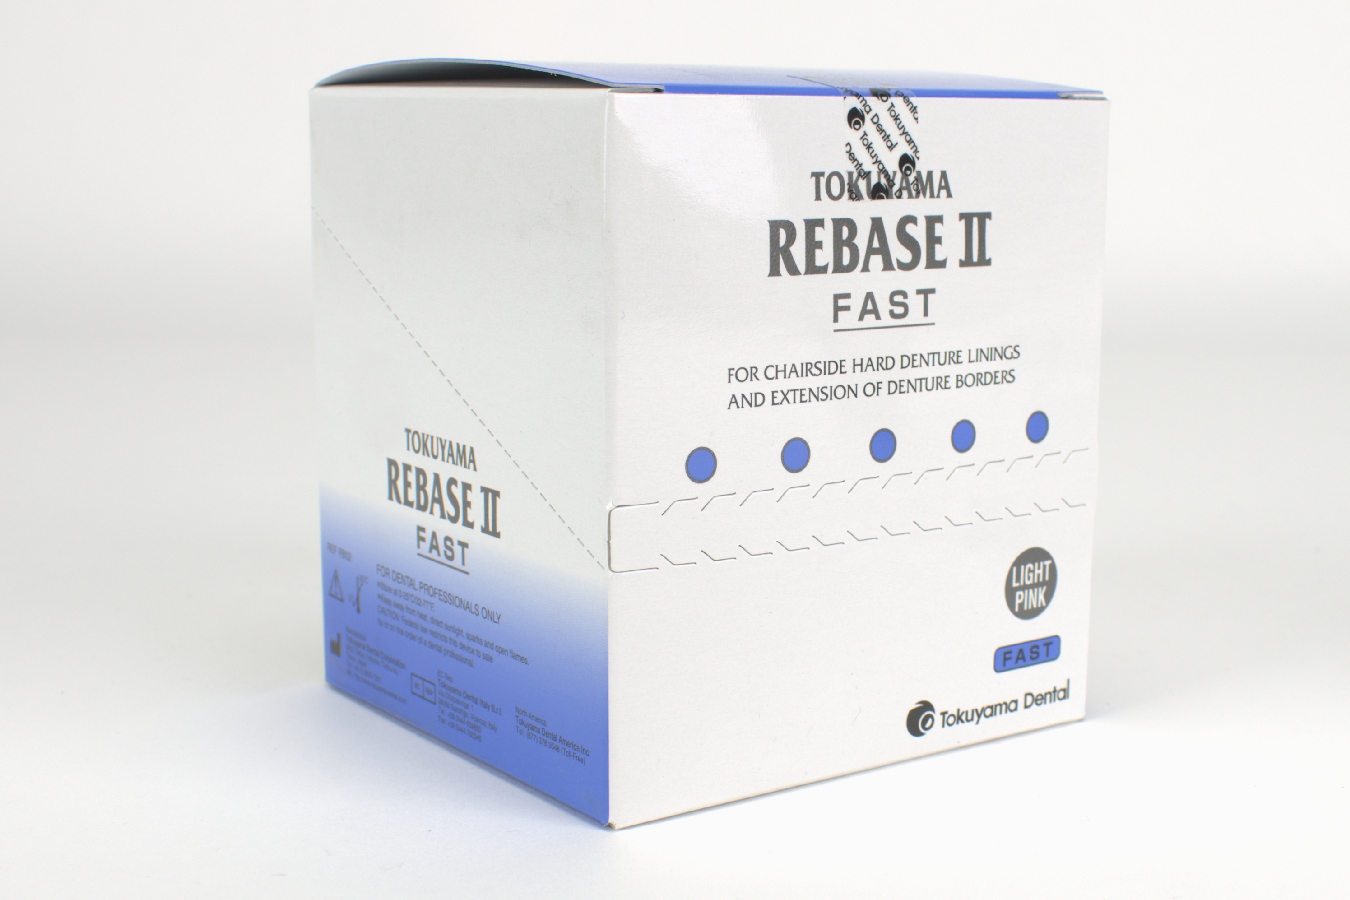 Rebase II Fast Tokuyama Kit